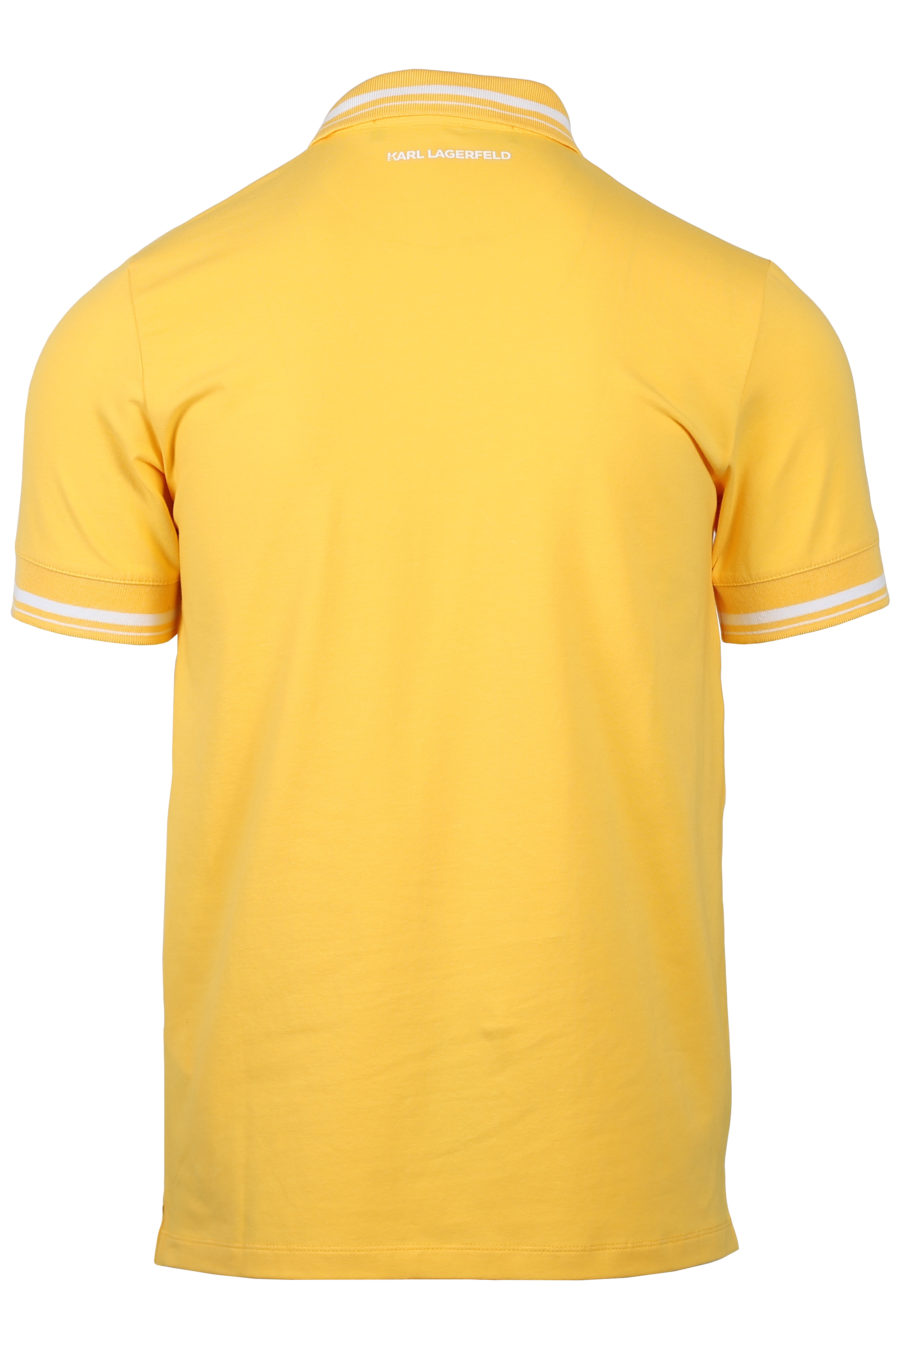 Polo jaune logo blanc - IMG 2031